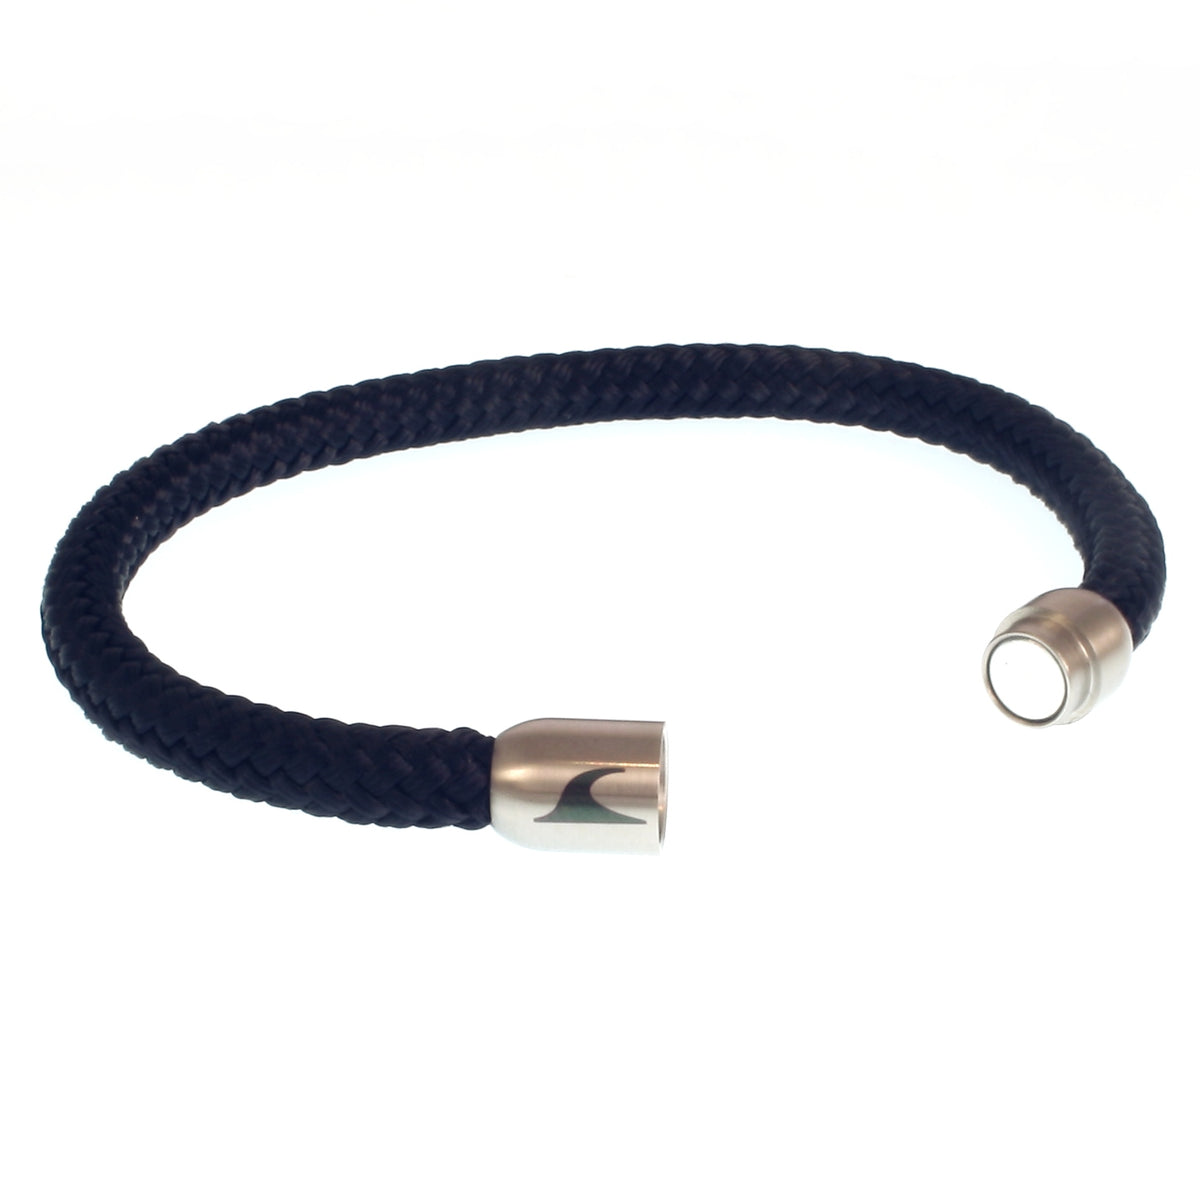 Herren-segeltau-armband-damen-sylt-nachtblau-marine-silber-geflochten-Edelstahlverschluss-offen-wavepirate-shop-st